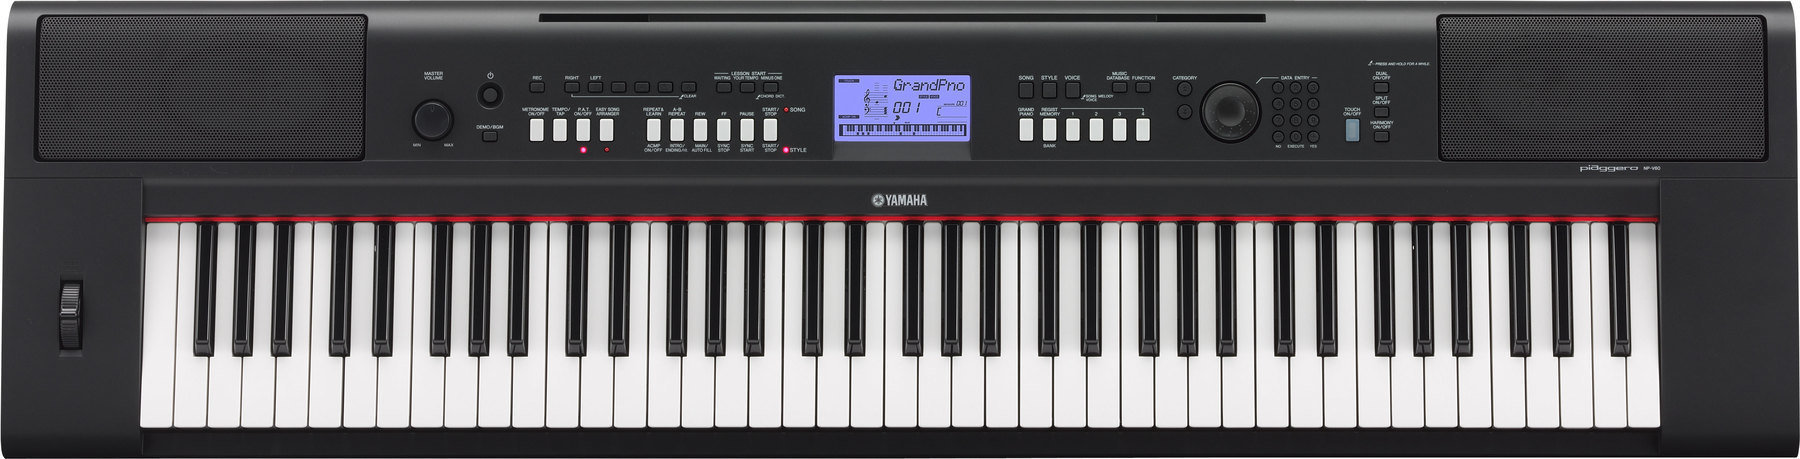 Keyboard with Touch Response Yamaha NP-V60 Piaggero